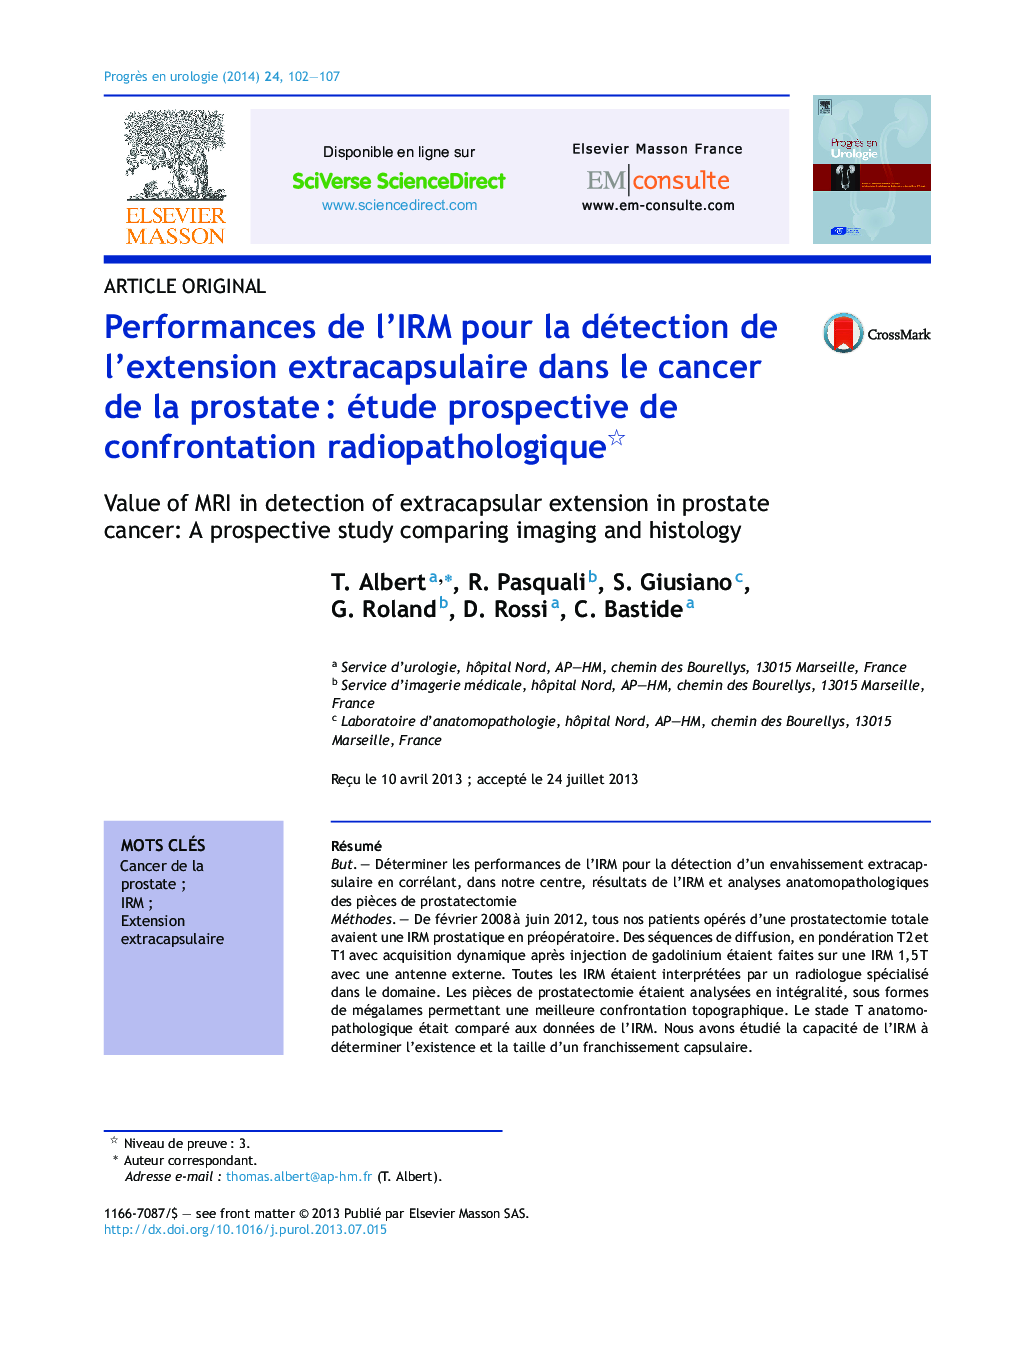 Performances de l’IRM pour la détection de l’extension extracapsulaire dans le cancer de la prostate : étude prospective de confrontation radiopathologique 